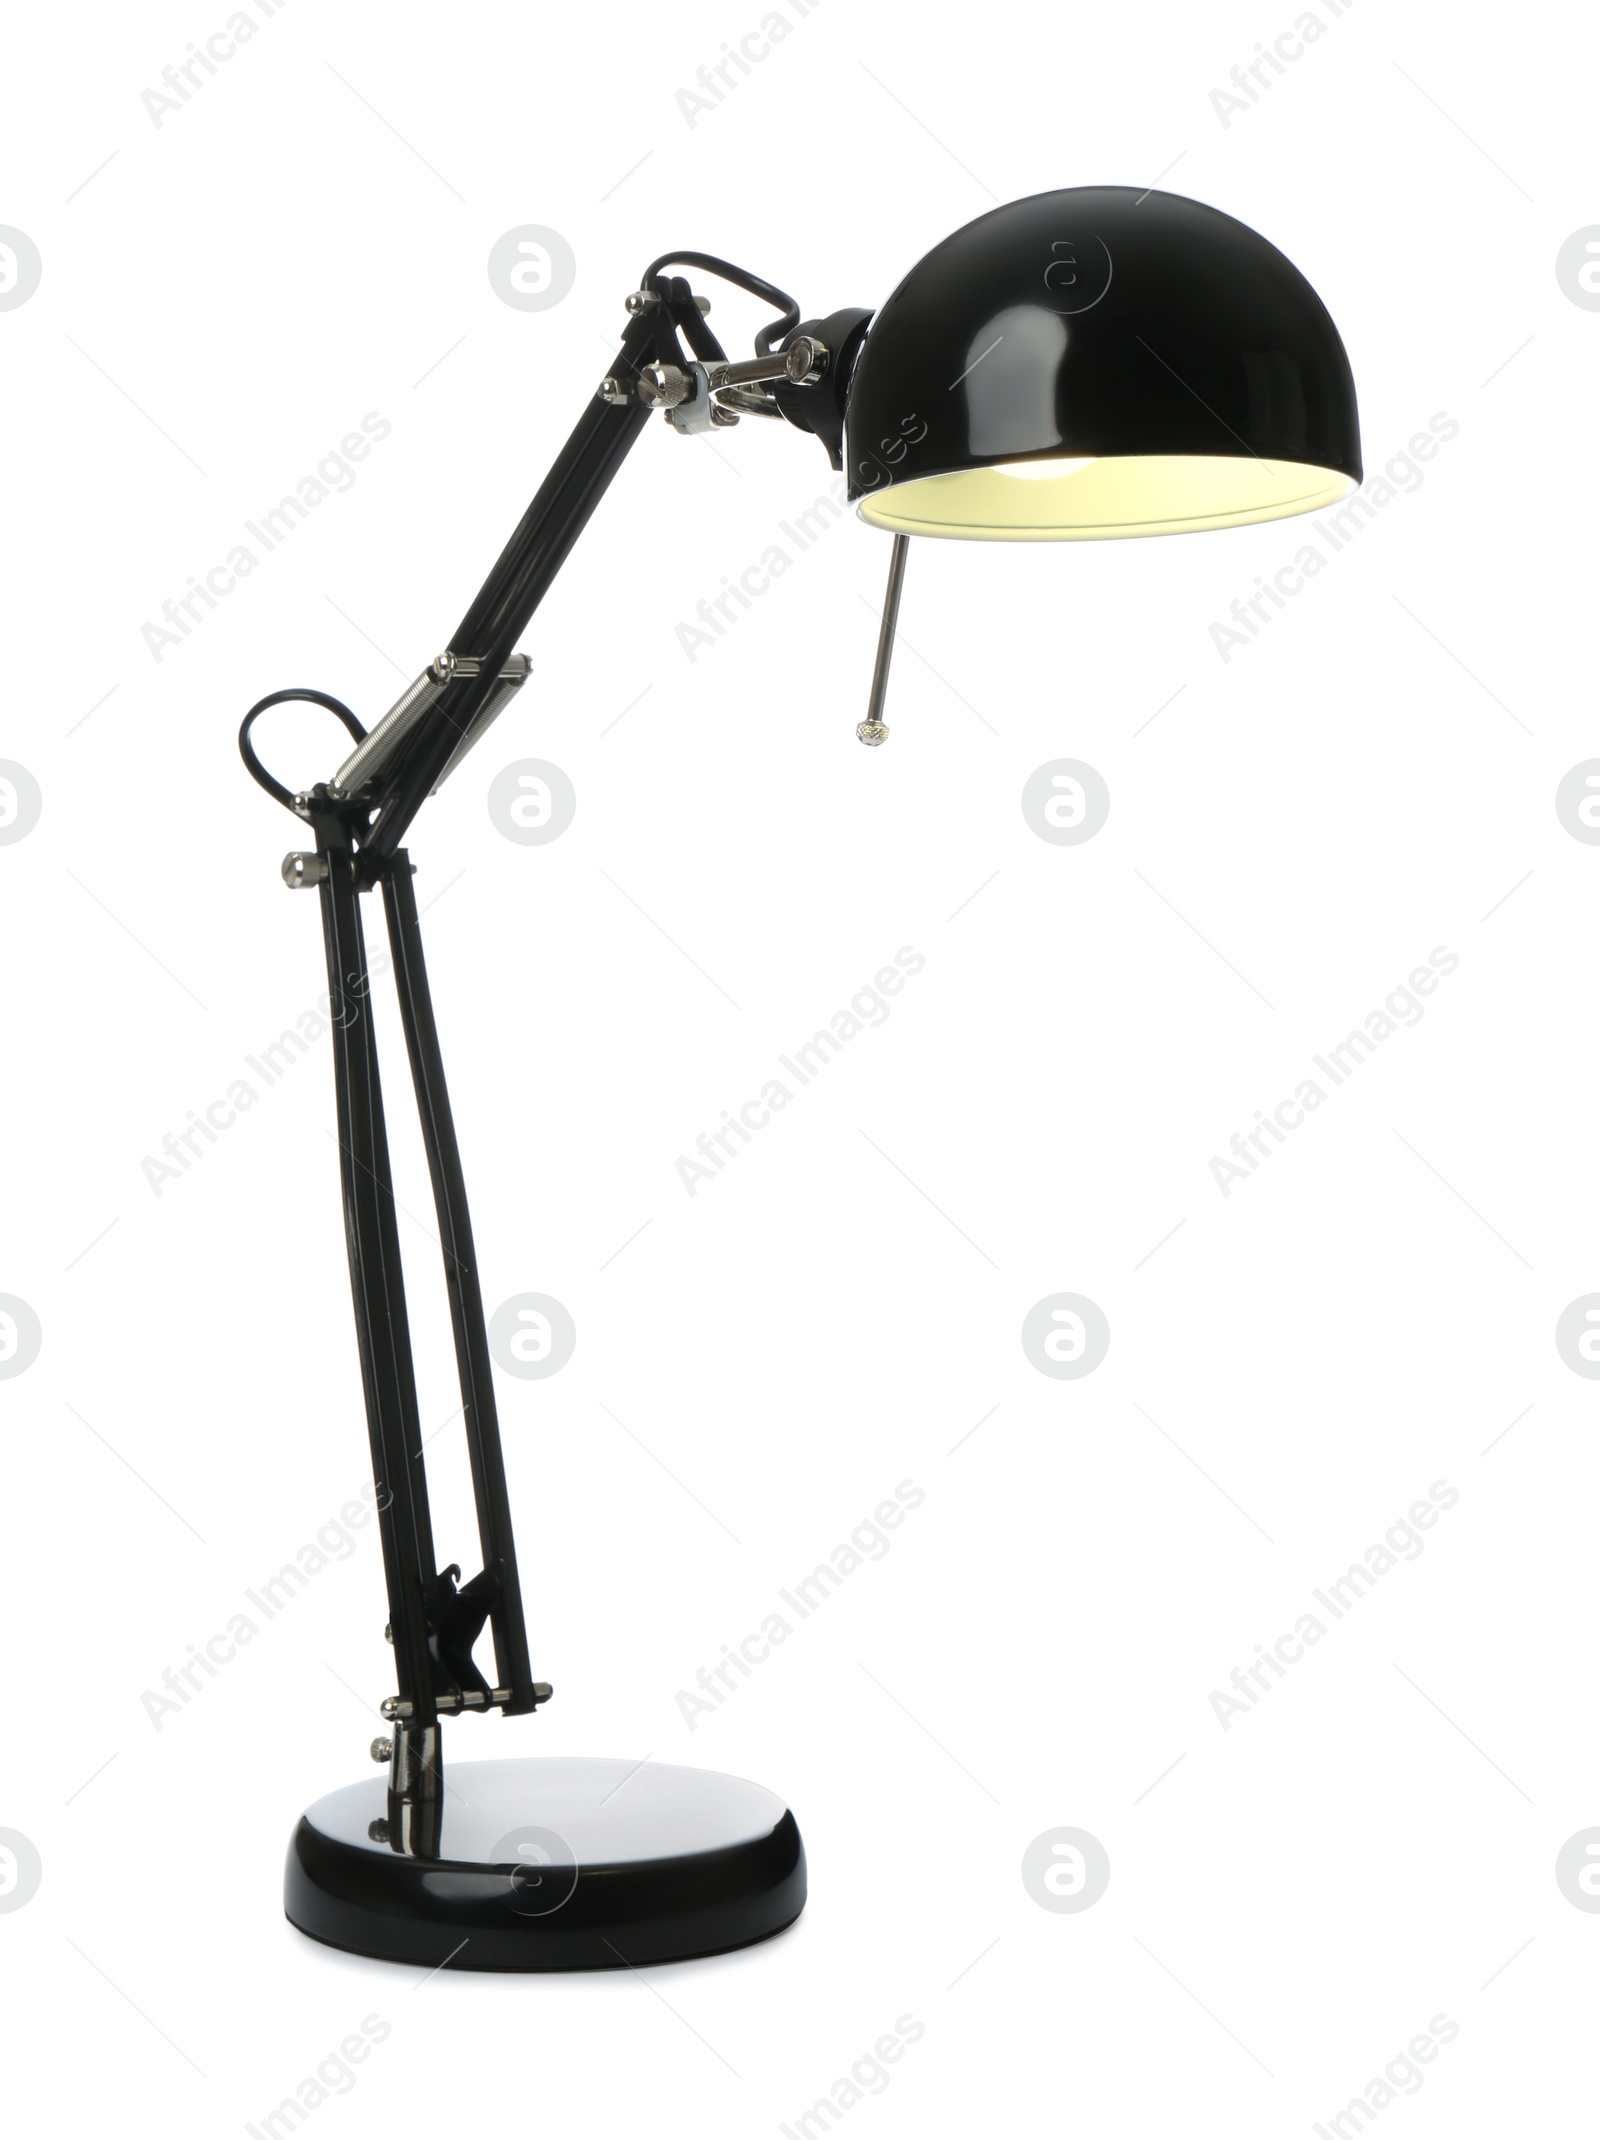 Photo of Stylish black table lamp isolated on white